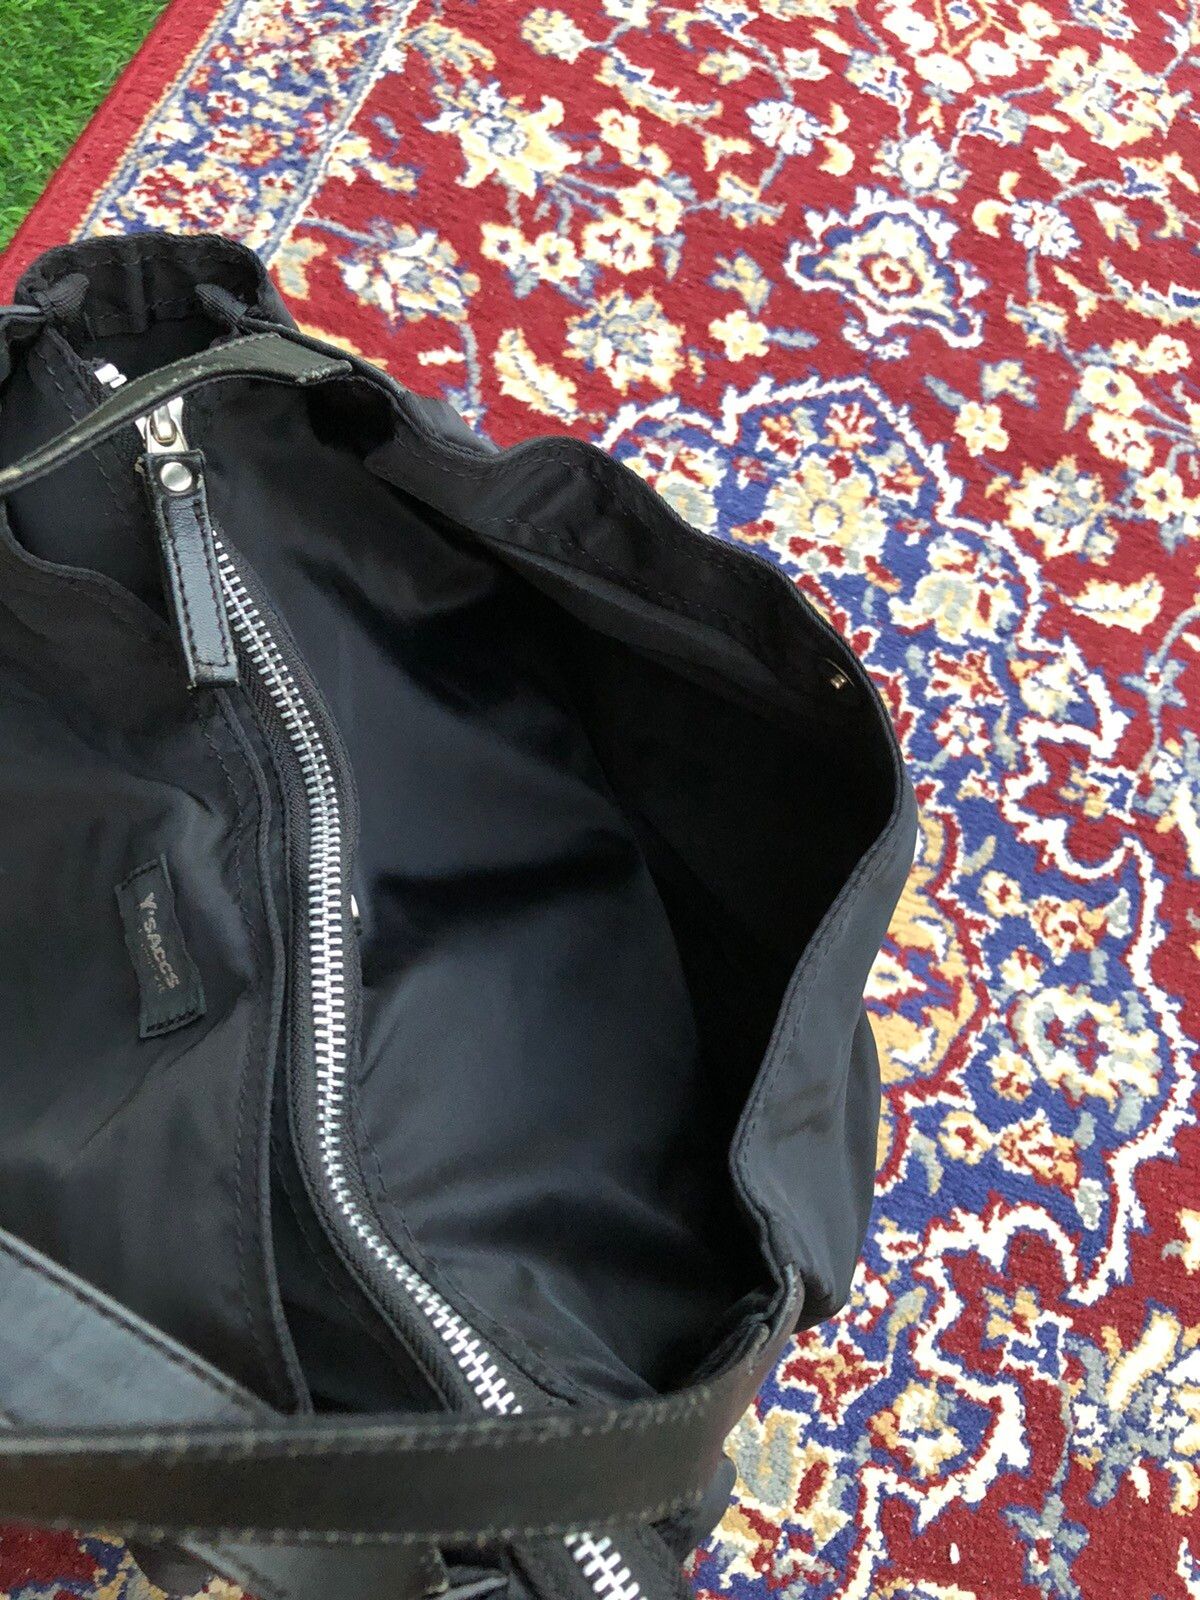 Y’saacs Nylon Duffle Gym Travel Bag - 11